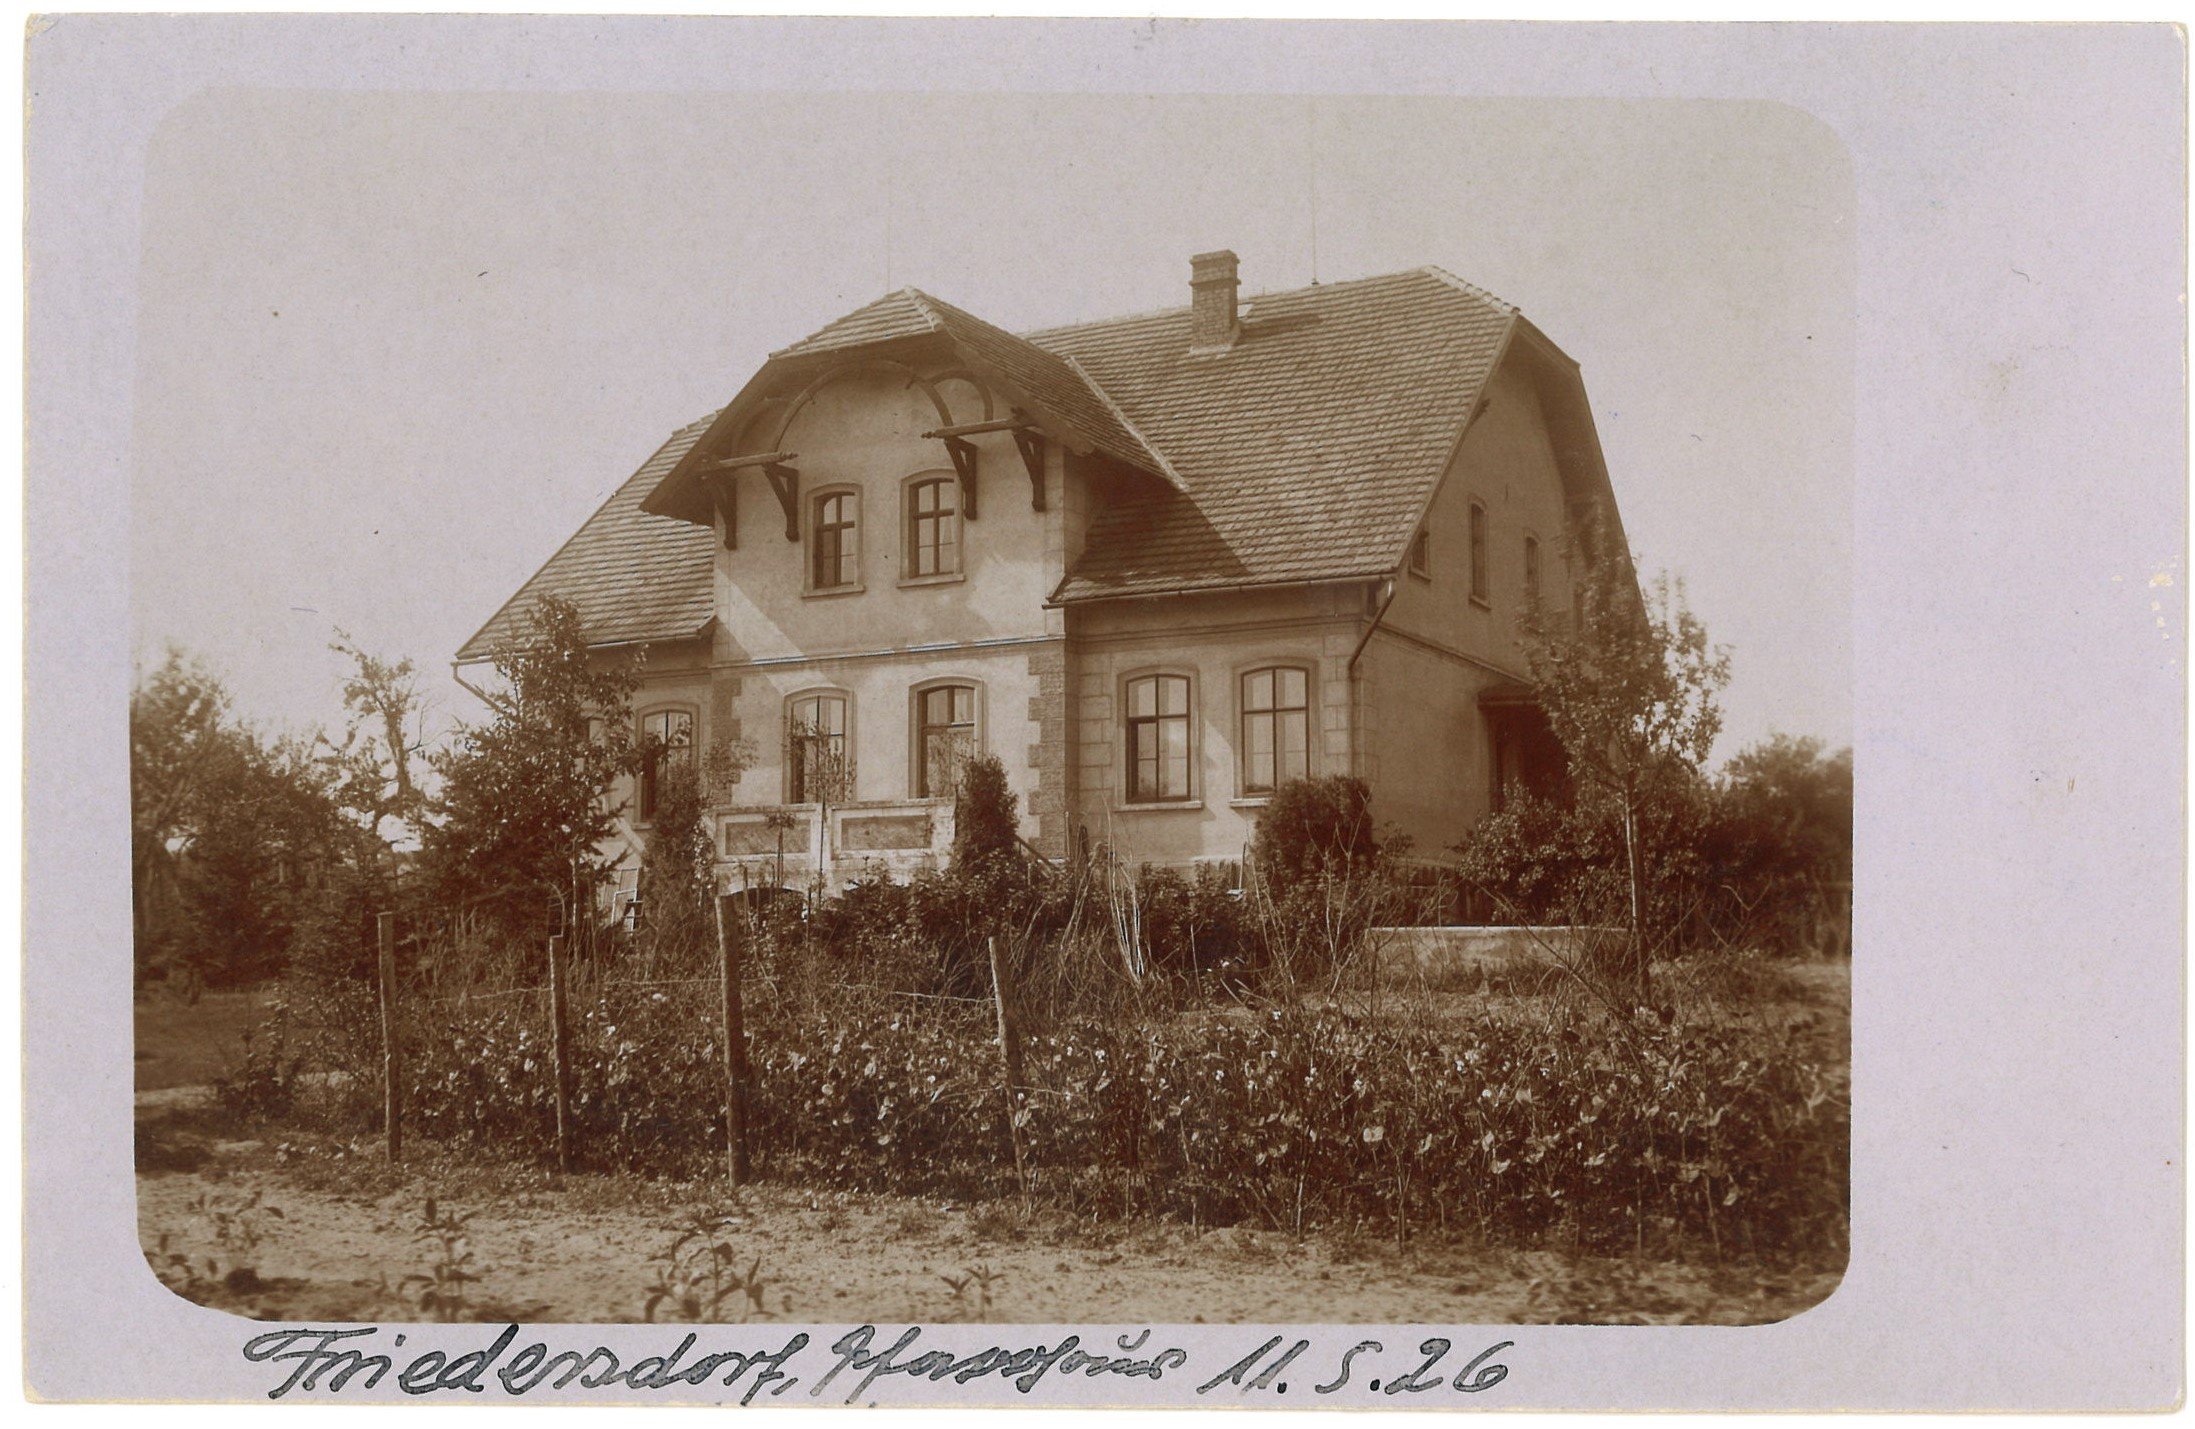 Friedersdorf (Kr. Sorau) / Biedrzychowice Dolne: Pfarrhaus (Landesgeschichtliche Vereinigung für die Mark Brandenburg e.V., Archiv CC BY)